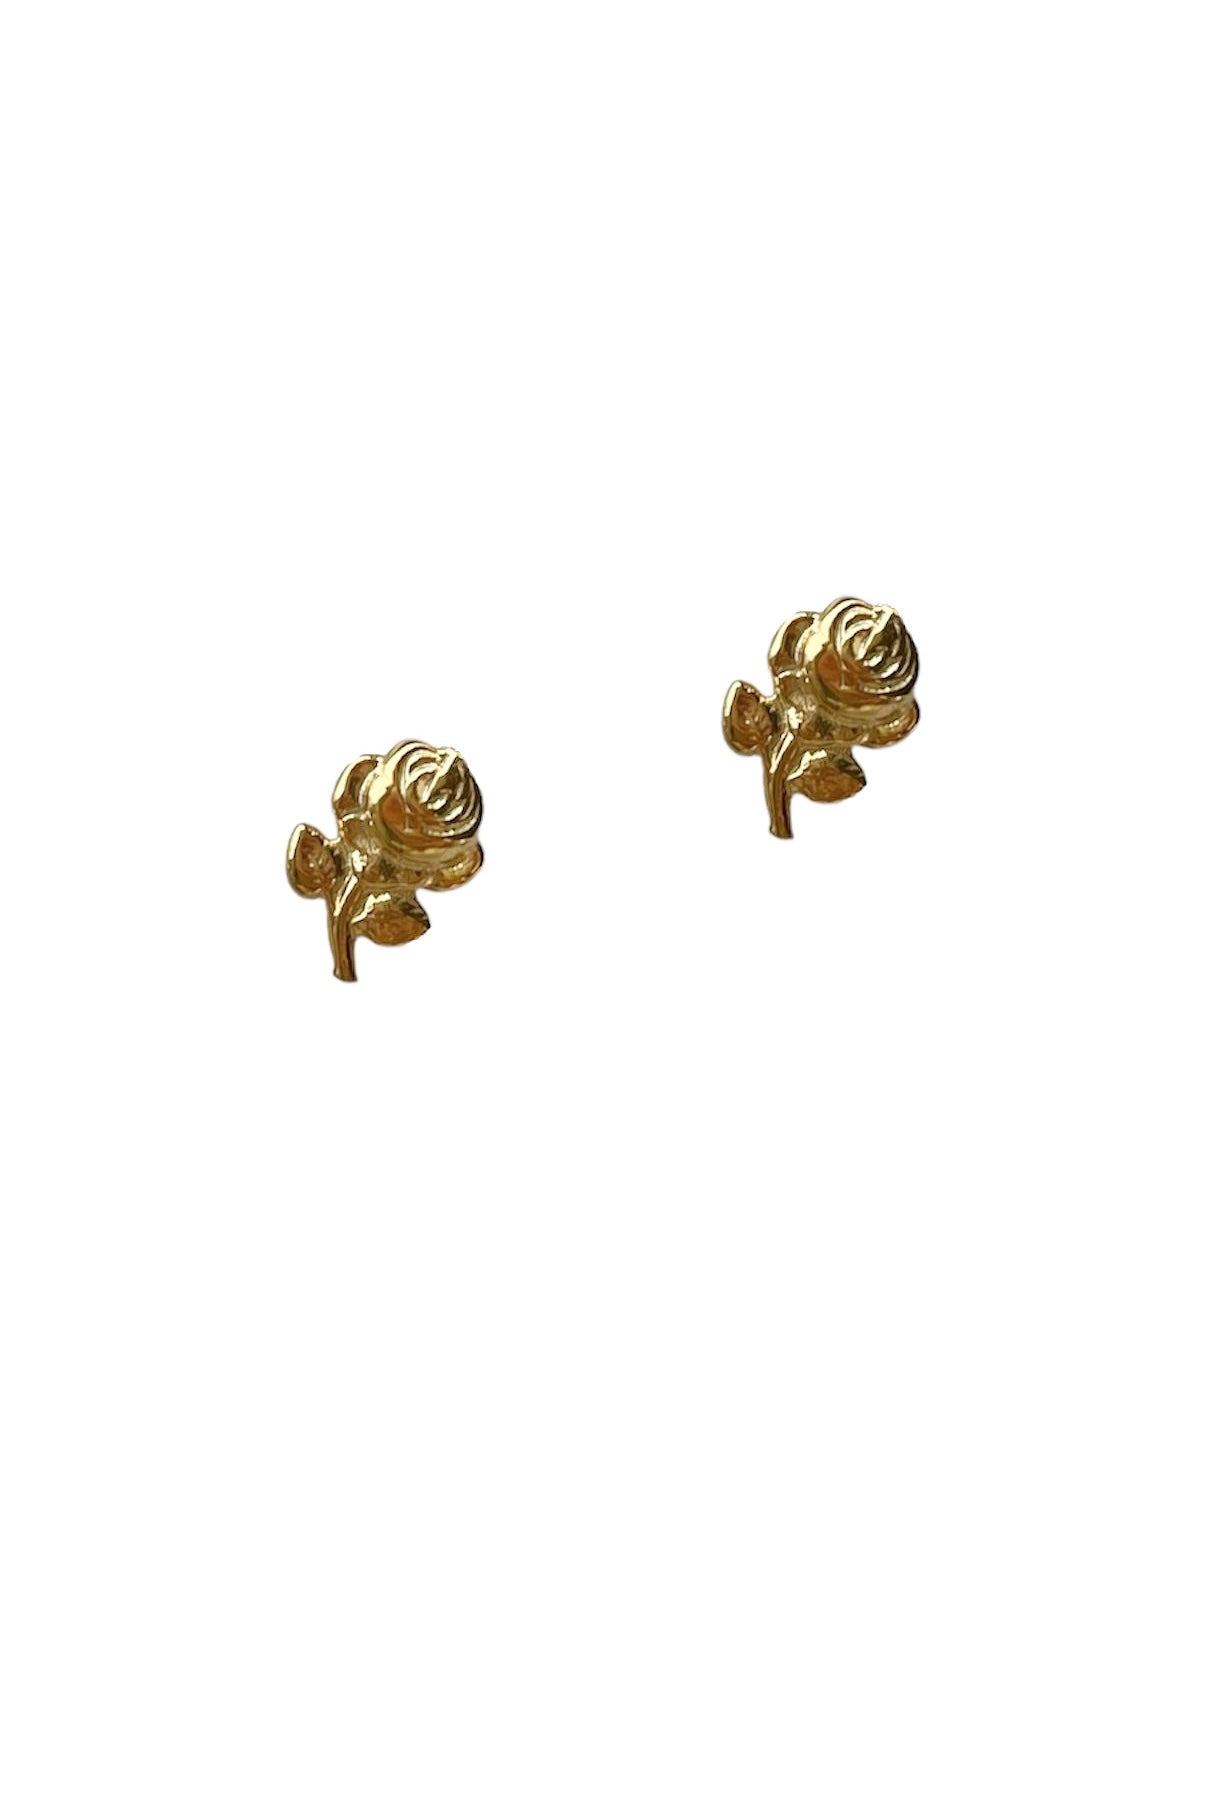 Zénaïs Rose 2023 Lucky Charm - Earrings - Gold or Silver